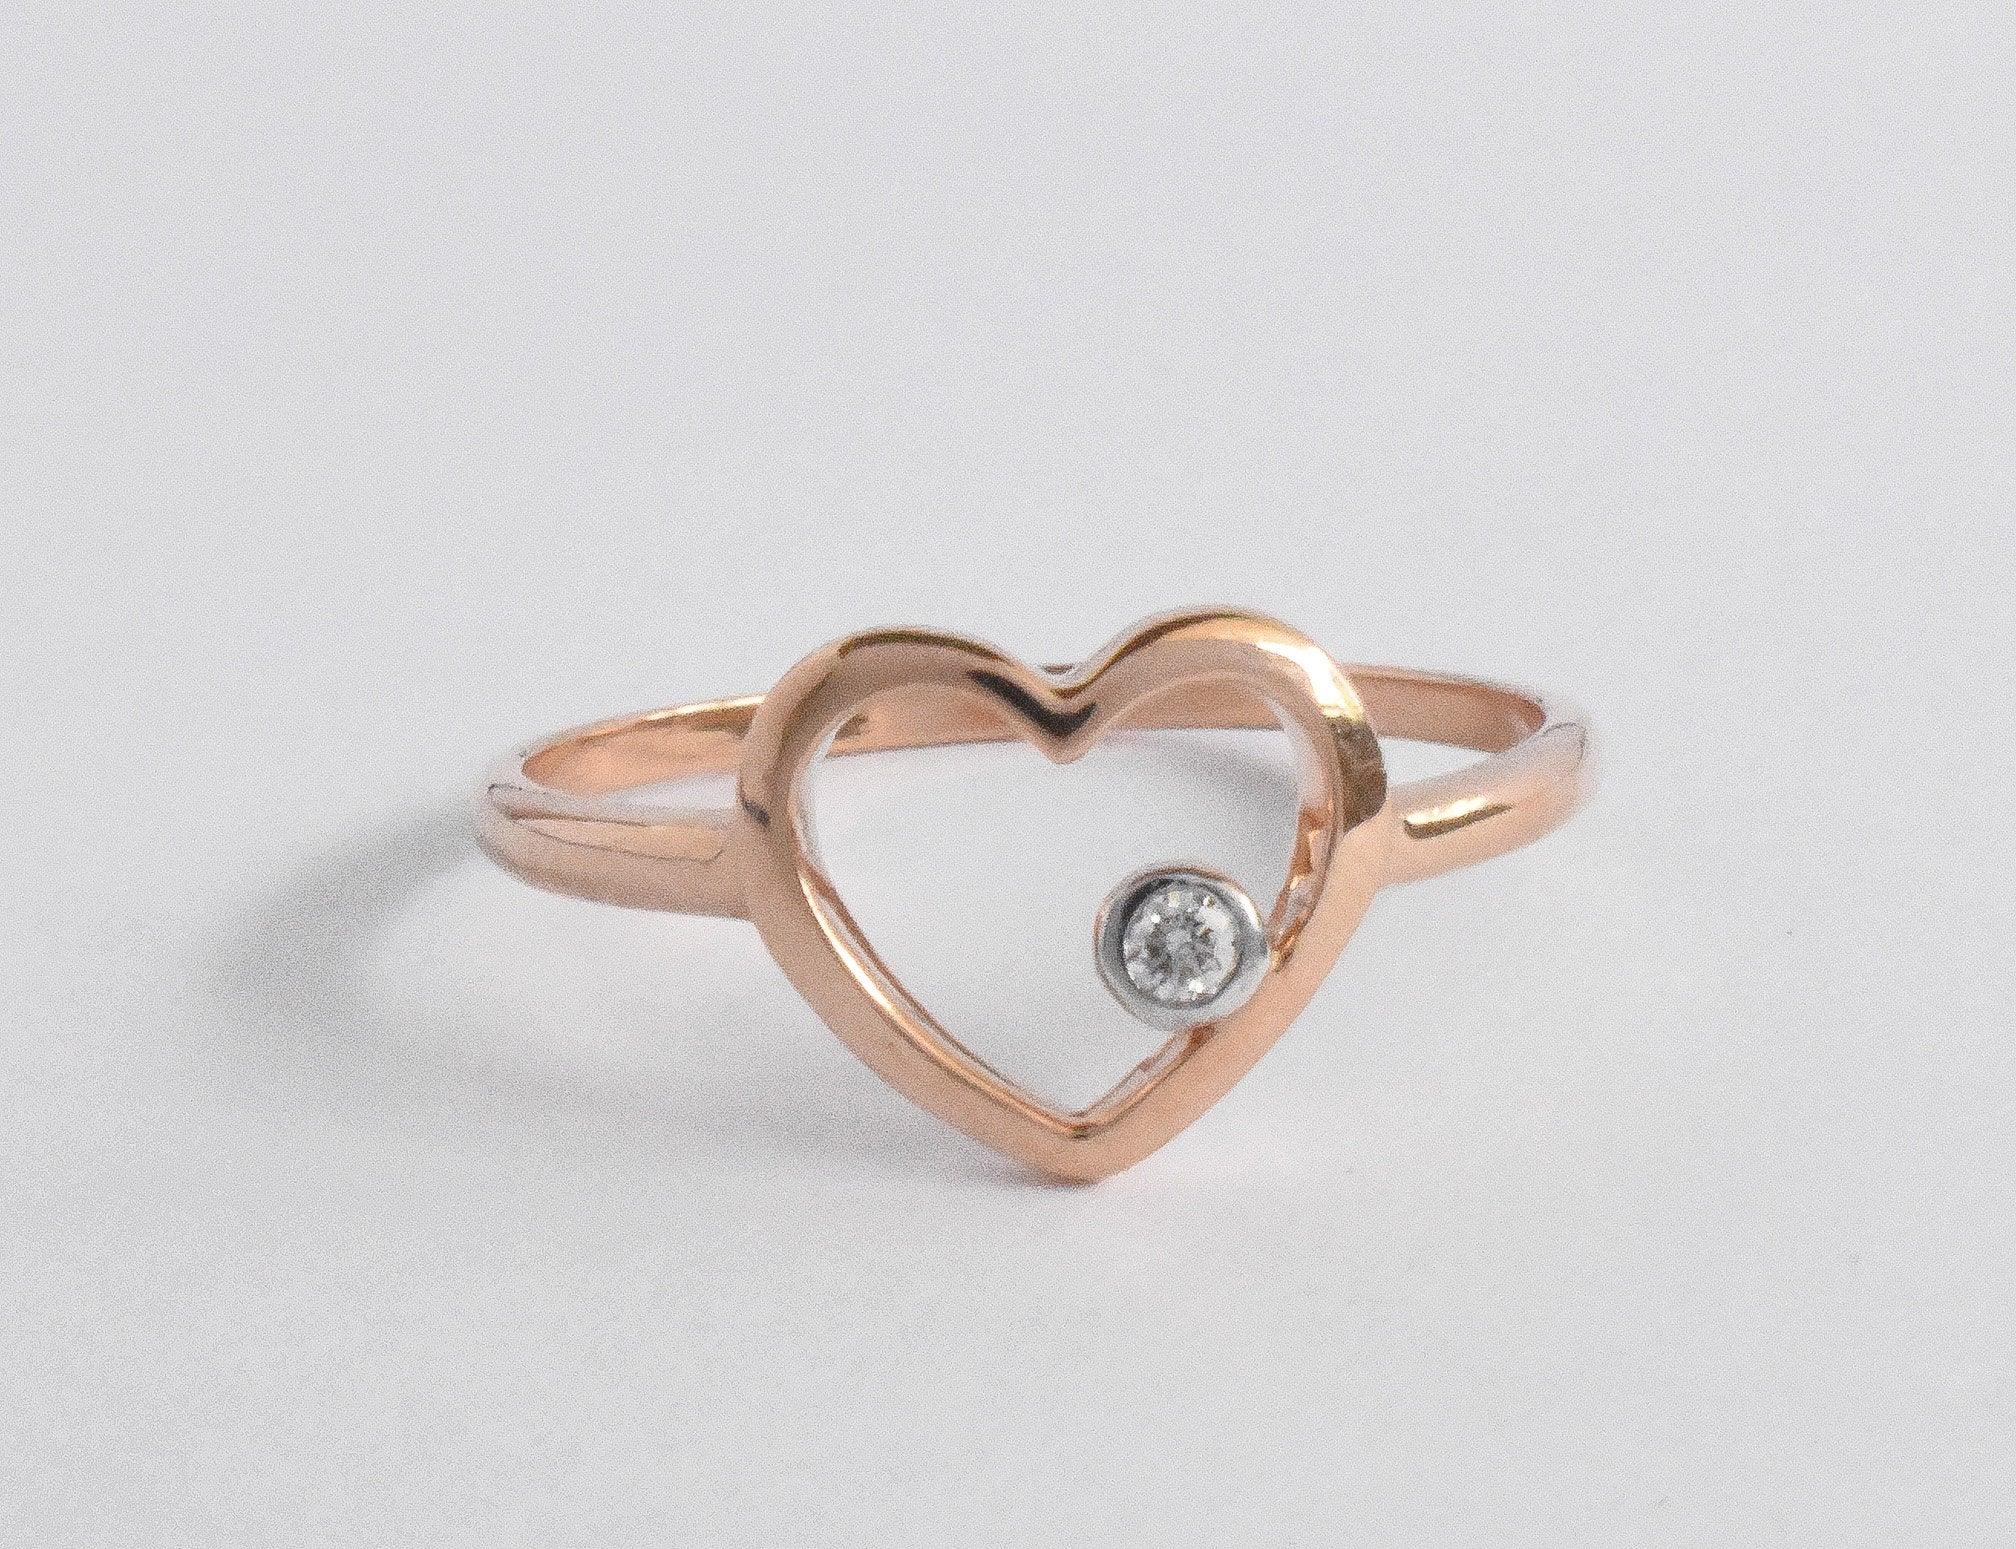 For Sale:  18k Rose Gold Diamond Heart Ring Minimal Heart Ring with Bezel Set Diamond 4